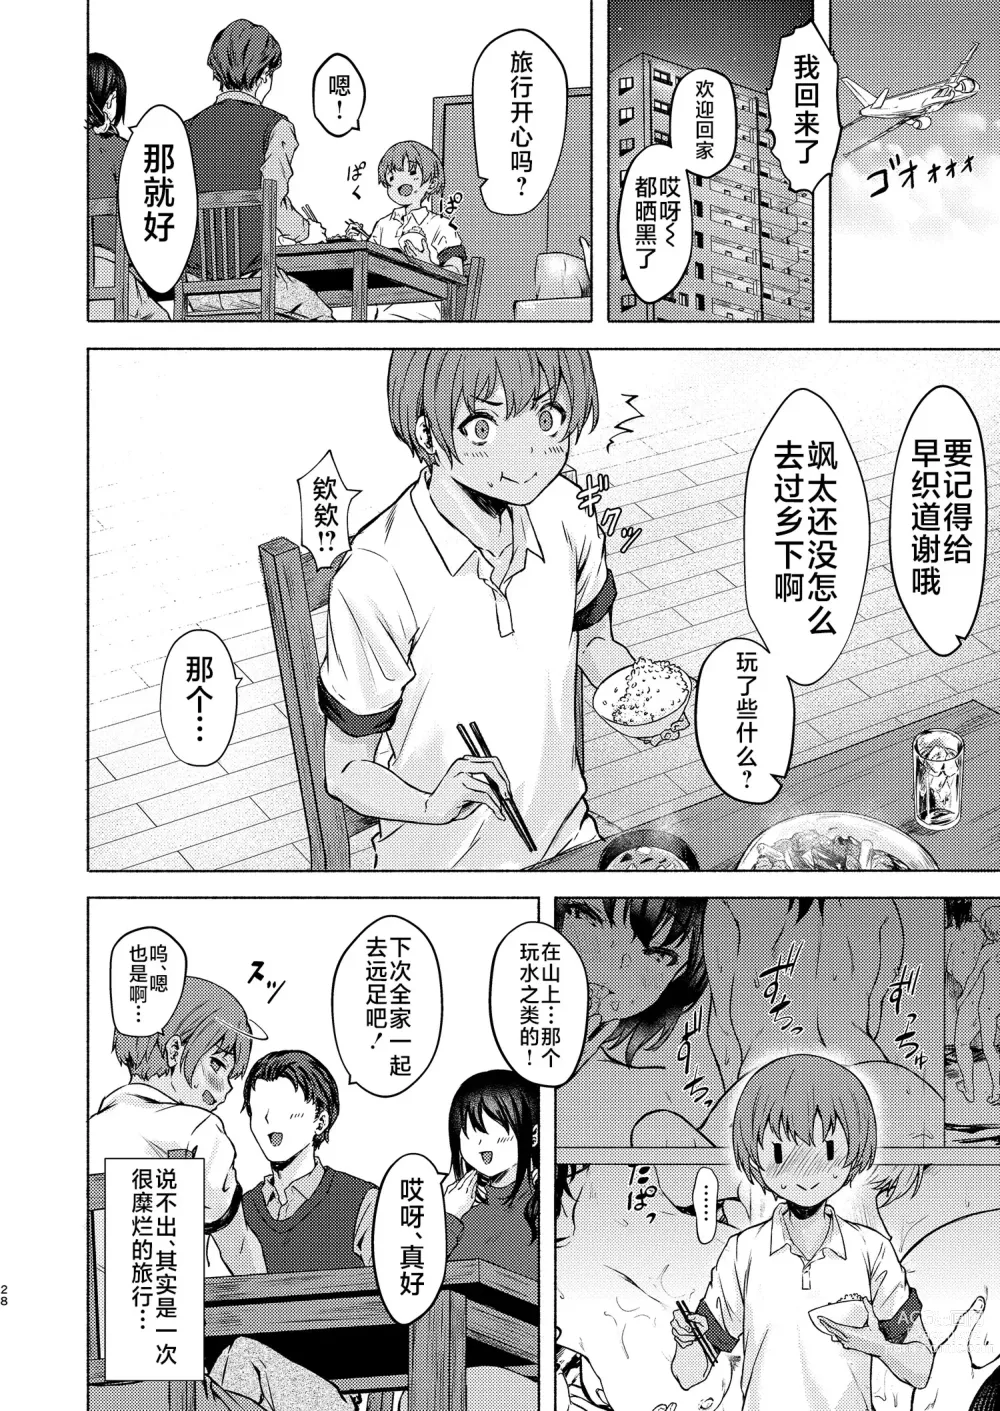 Page 28 of doujinshi Motto Okkina Saori-chan wa Bukiyou ni Eroi